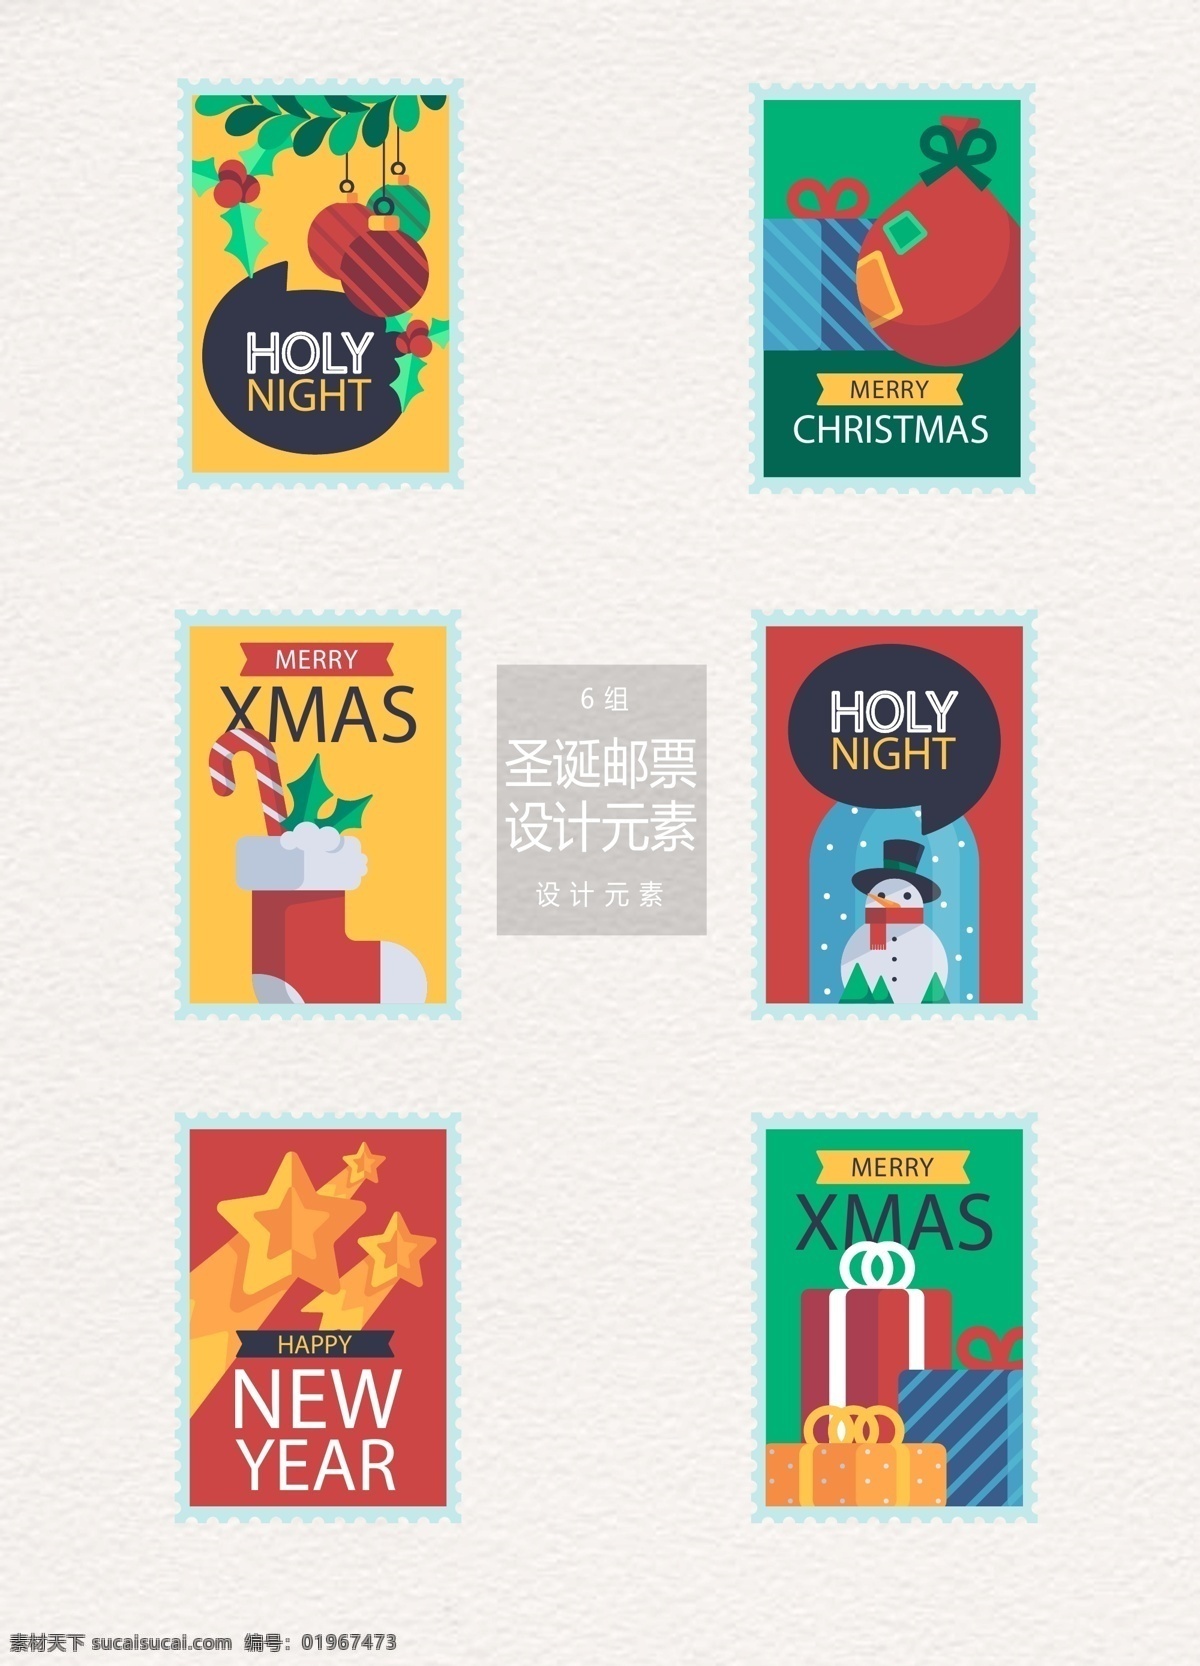 手绘 圣诞节 邮票 标签 元素 设计元素 标签设计 雪人 礼物 圣诞节邮票 圣诞 圣诞邮票 圣诞标签 圣诞球 圣诞袜 雪花球